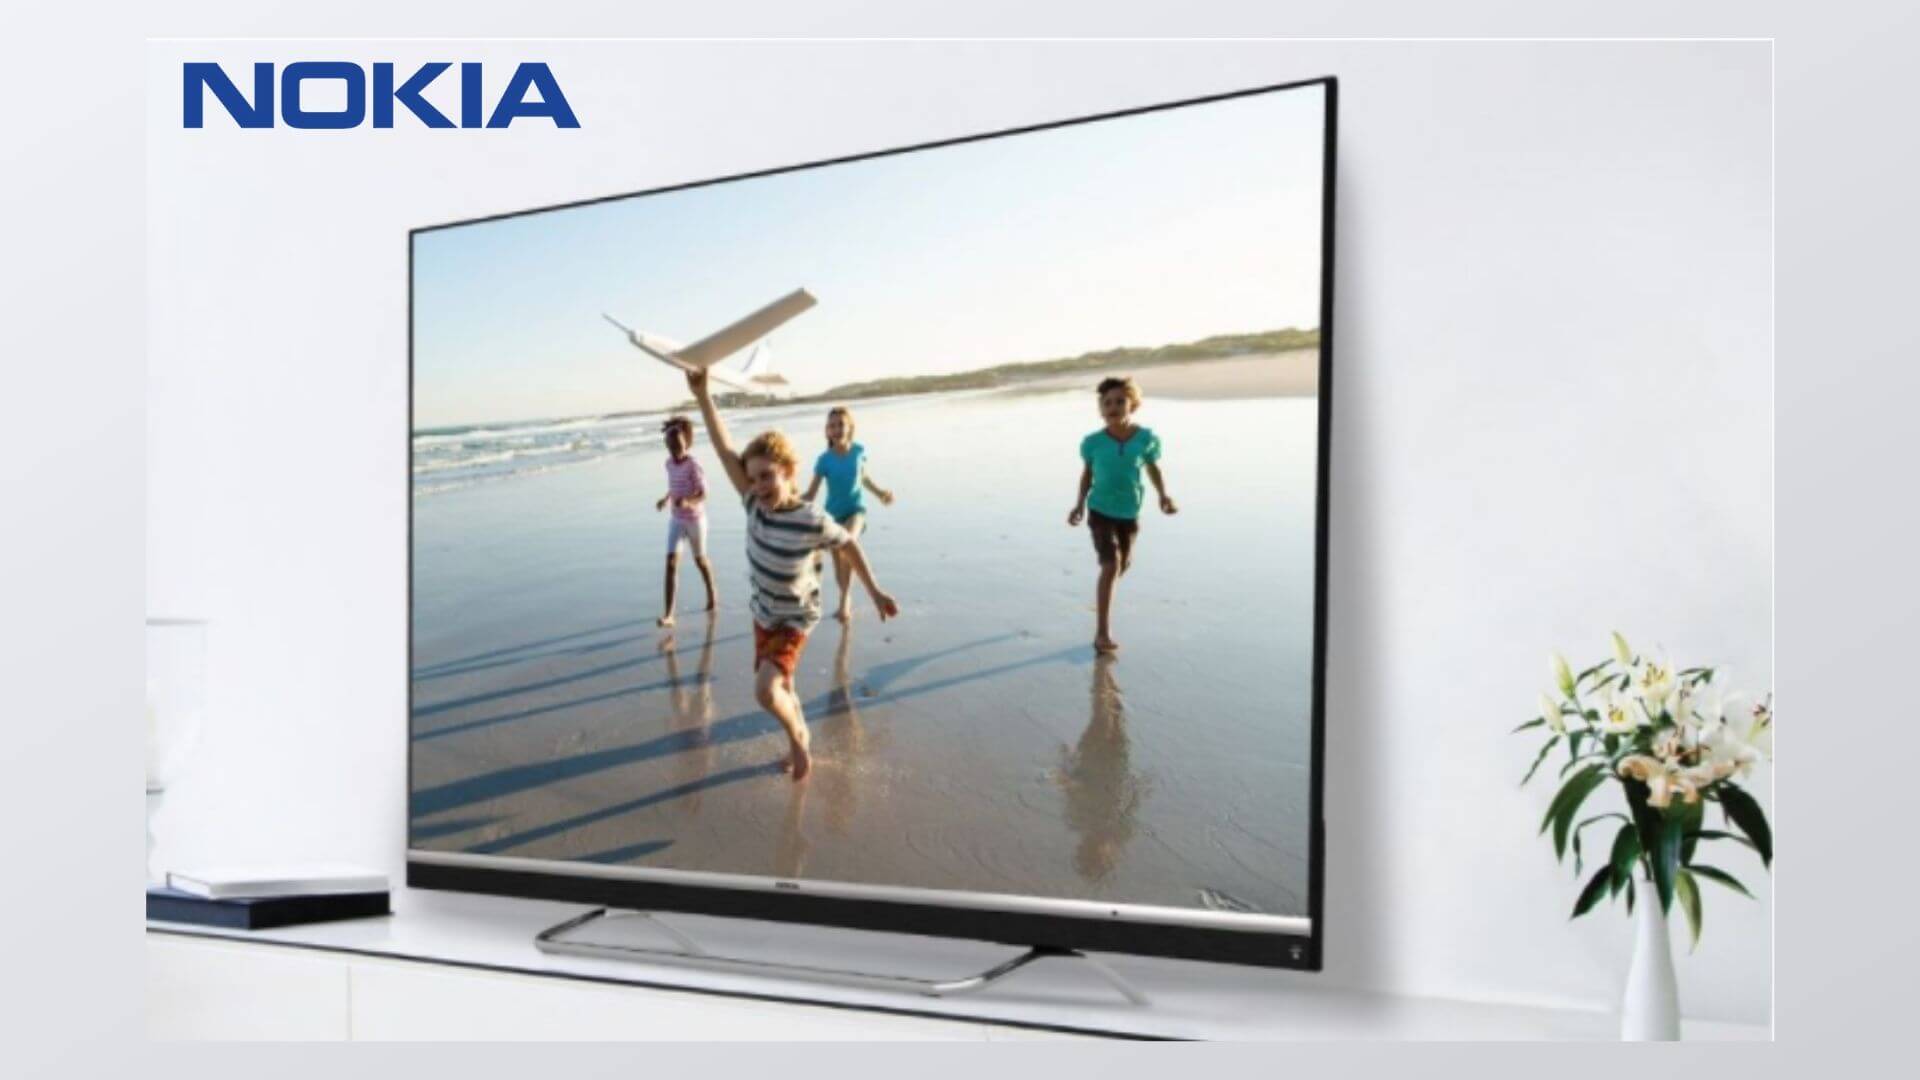 Nokia Smart TV available on Flipkart